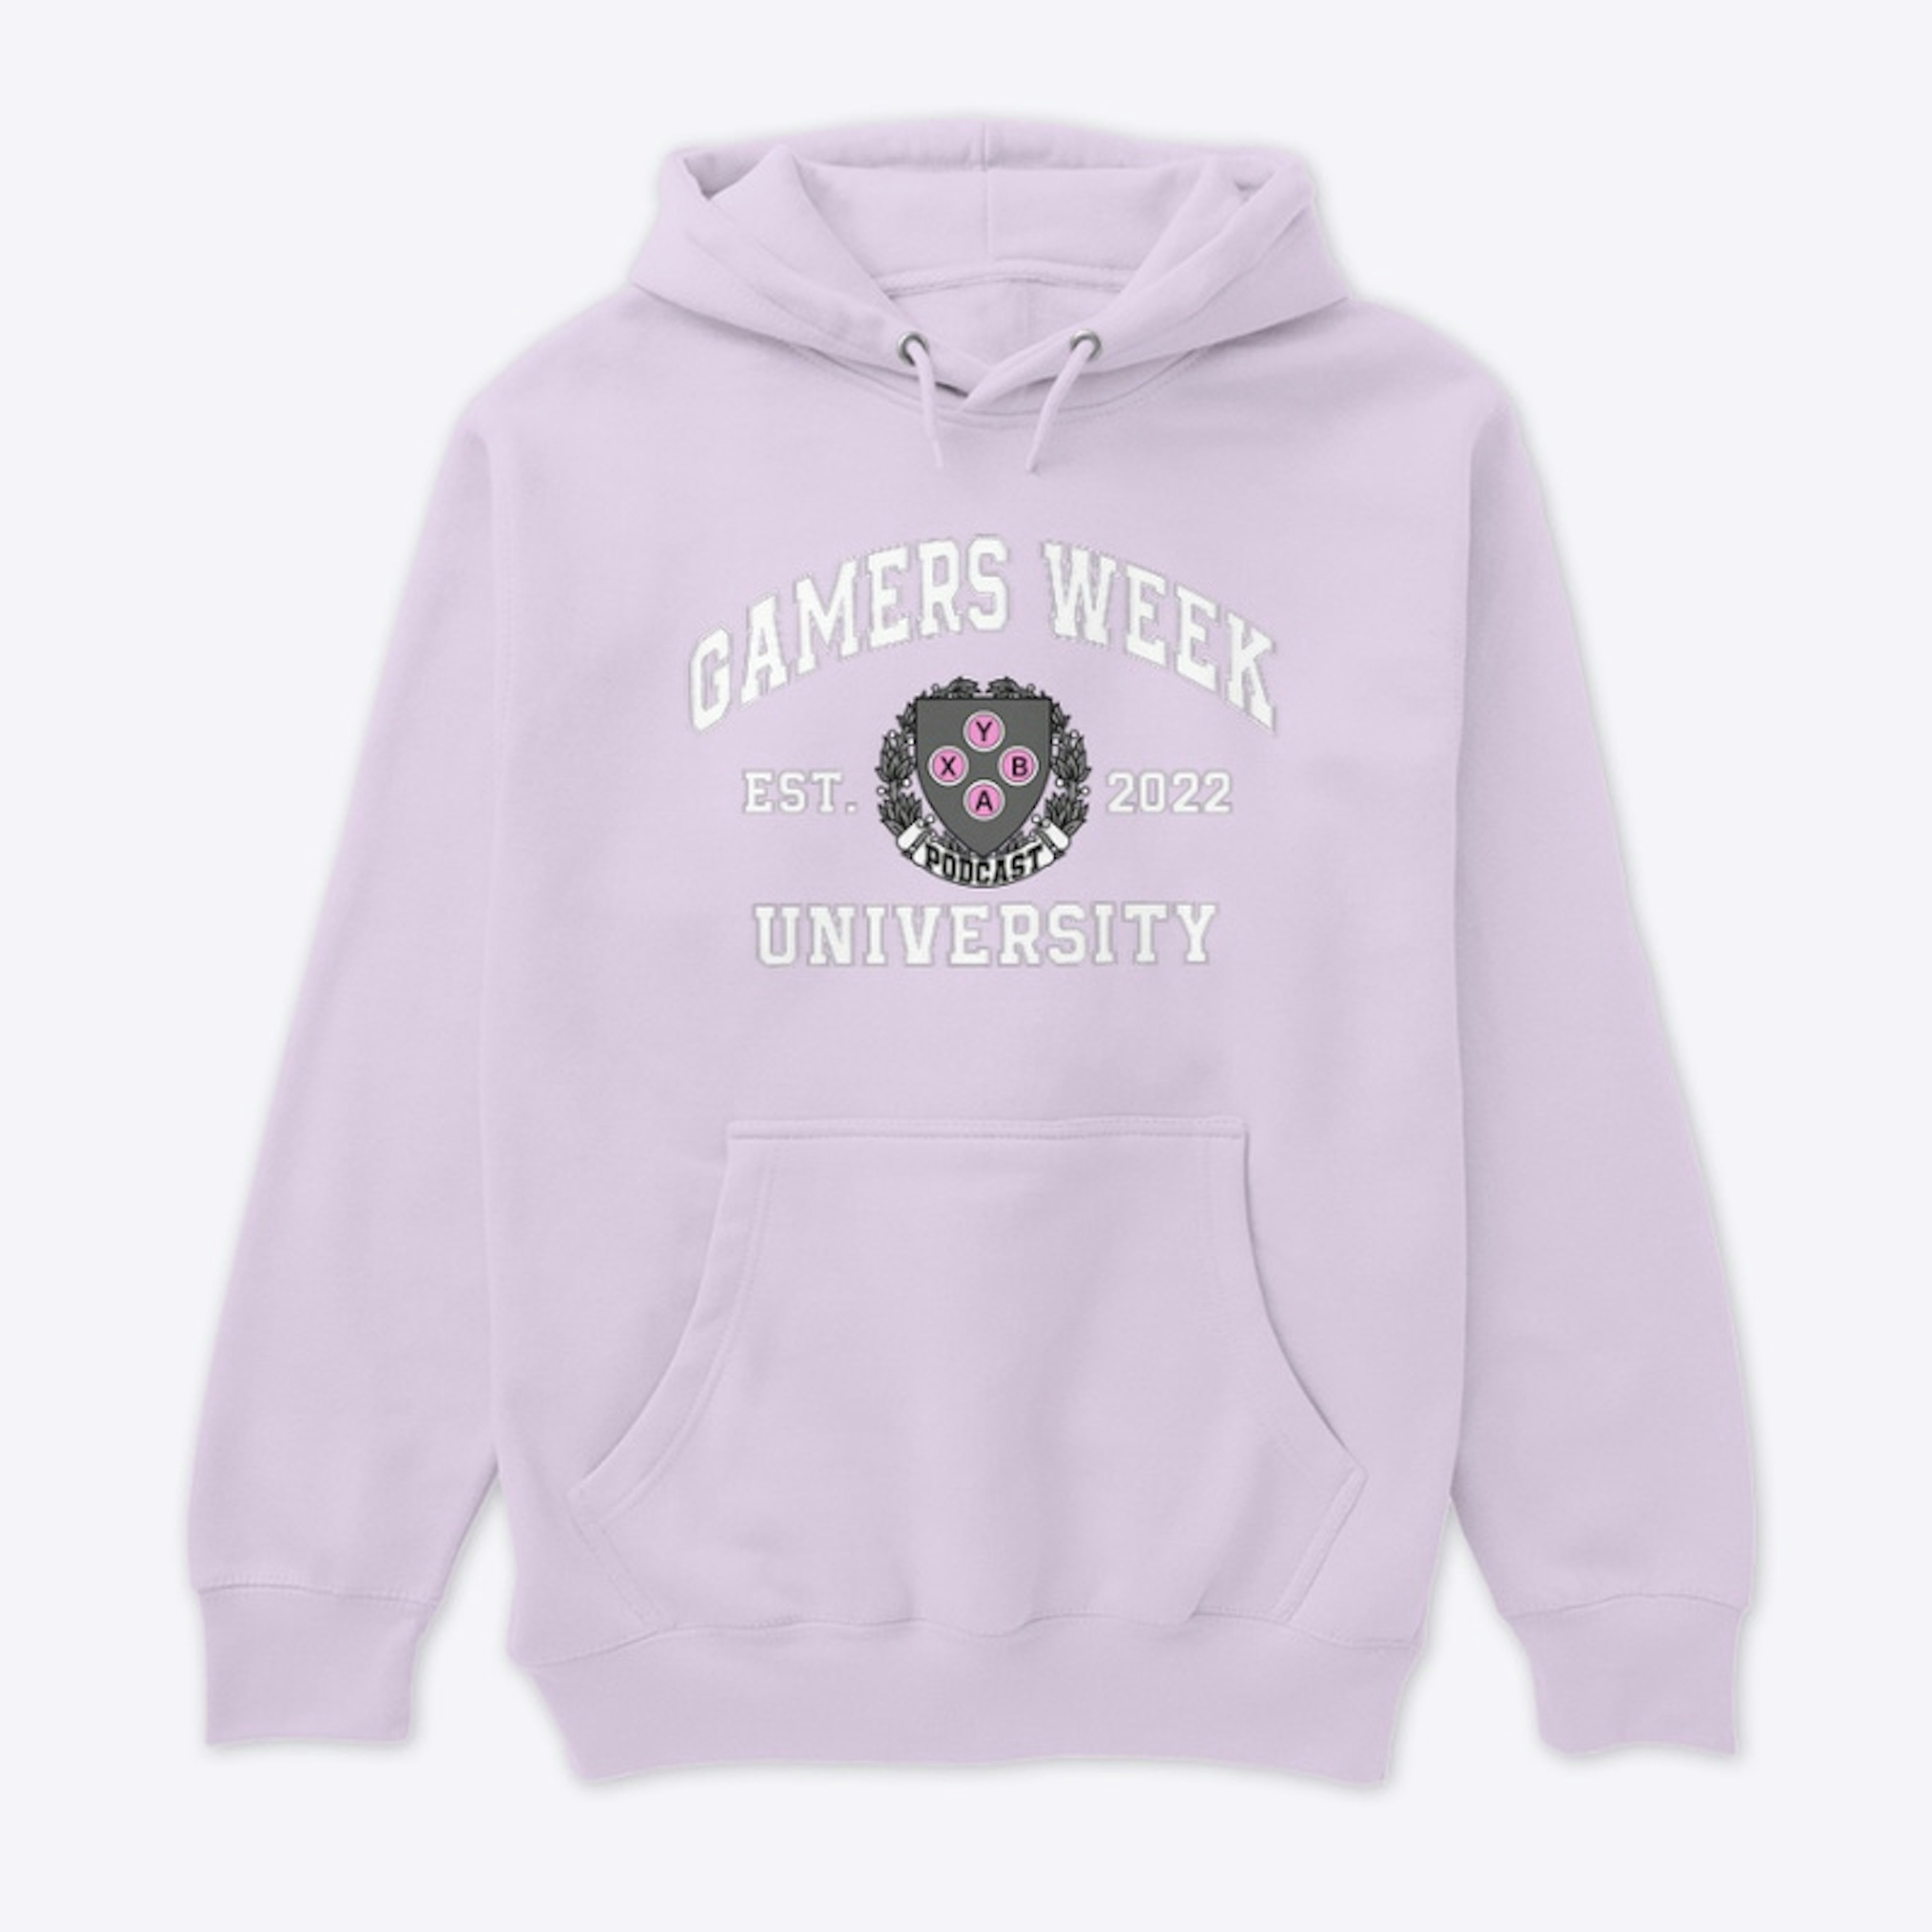 Gamers week university